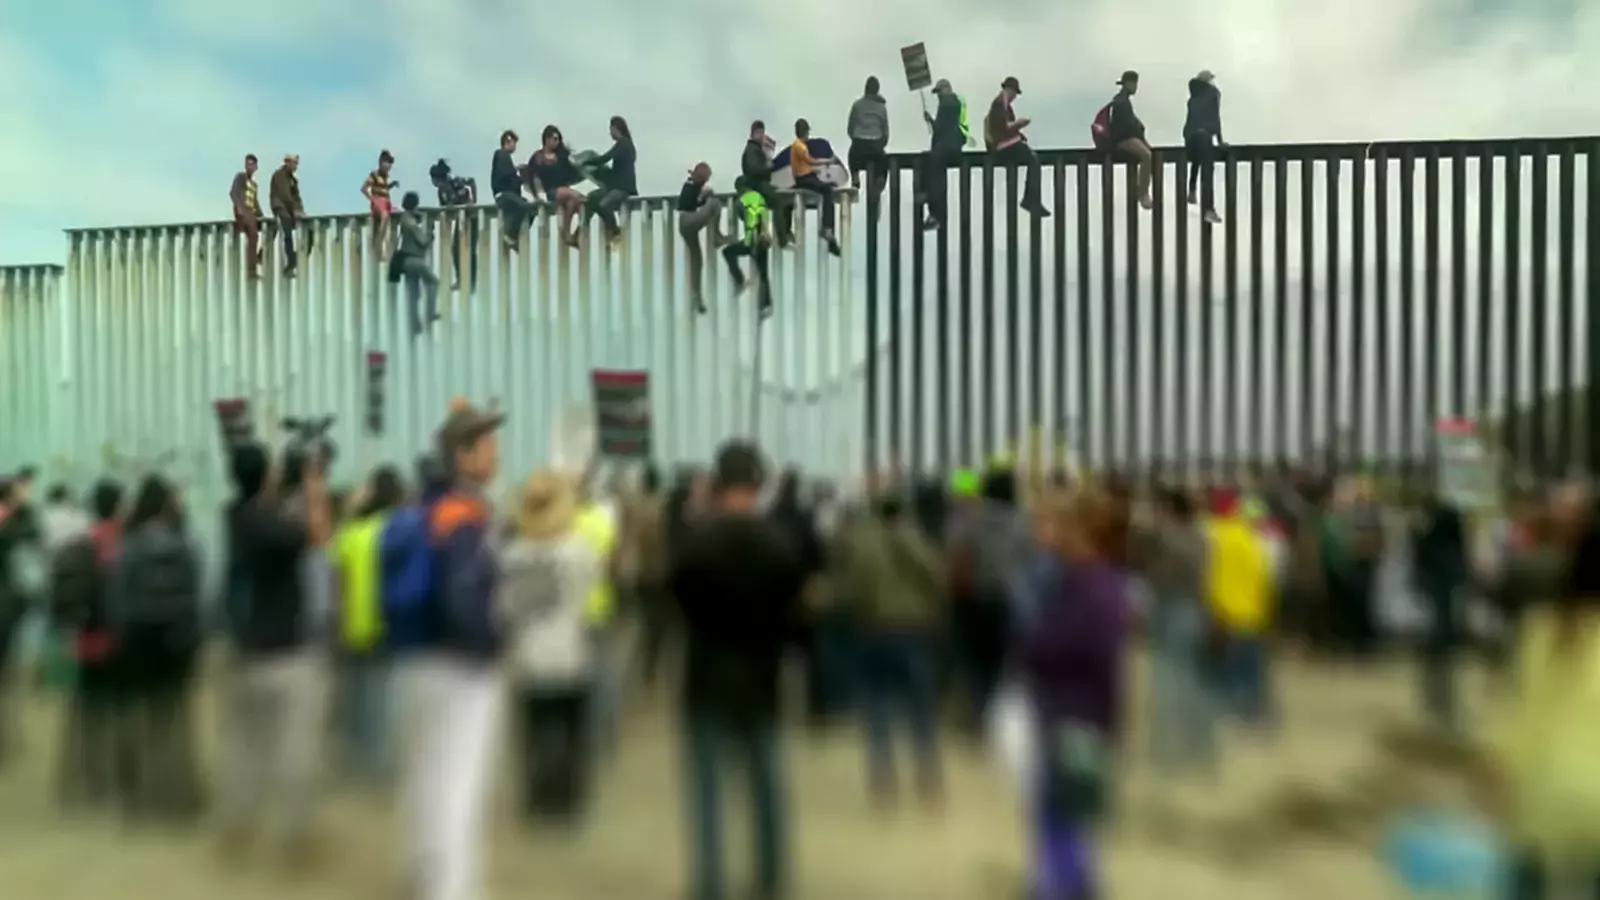 EEUU comenzará deportaciones aceleradas tras el fin del Título 42 en mayo